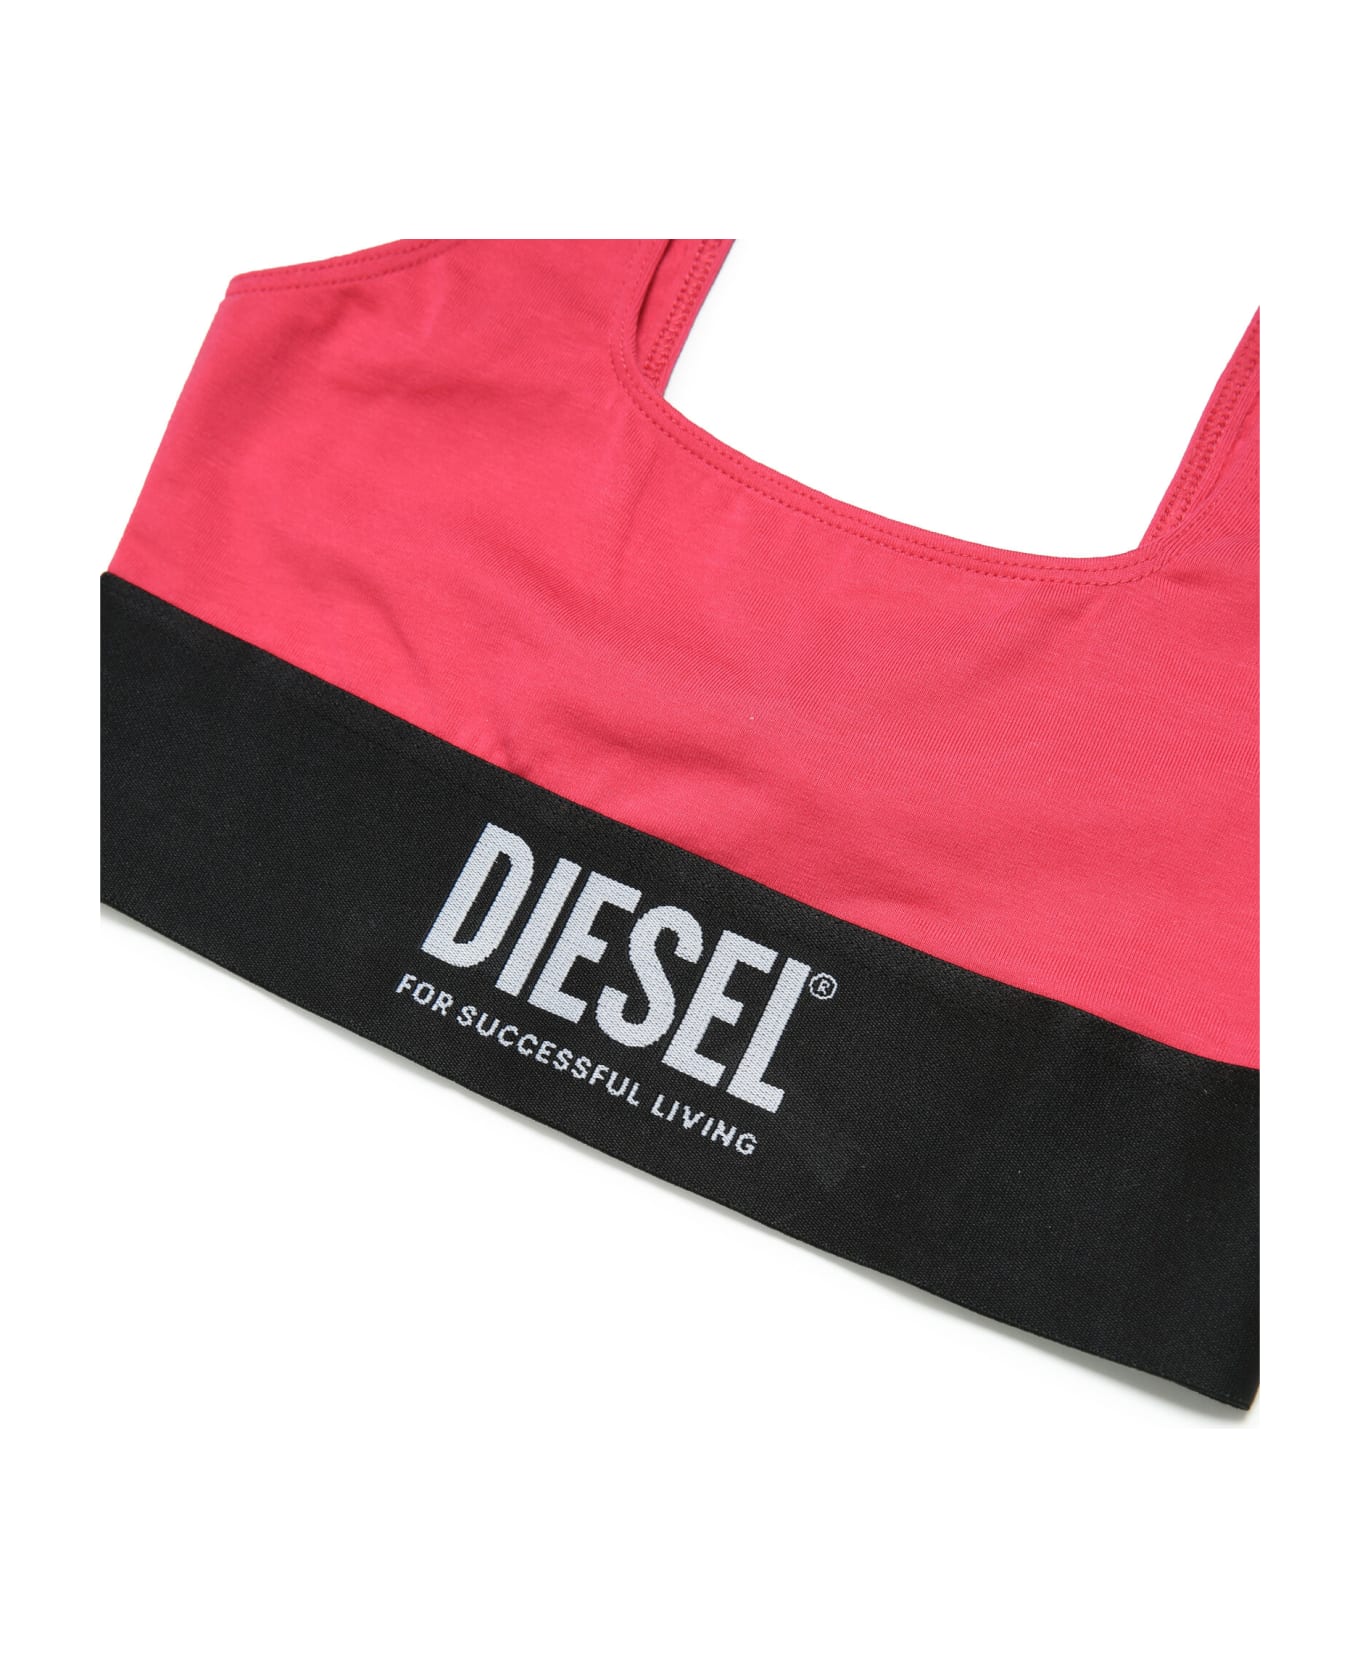 Diesel Ublouisa Und Bra Diesel - Strawberry red